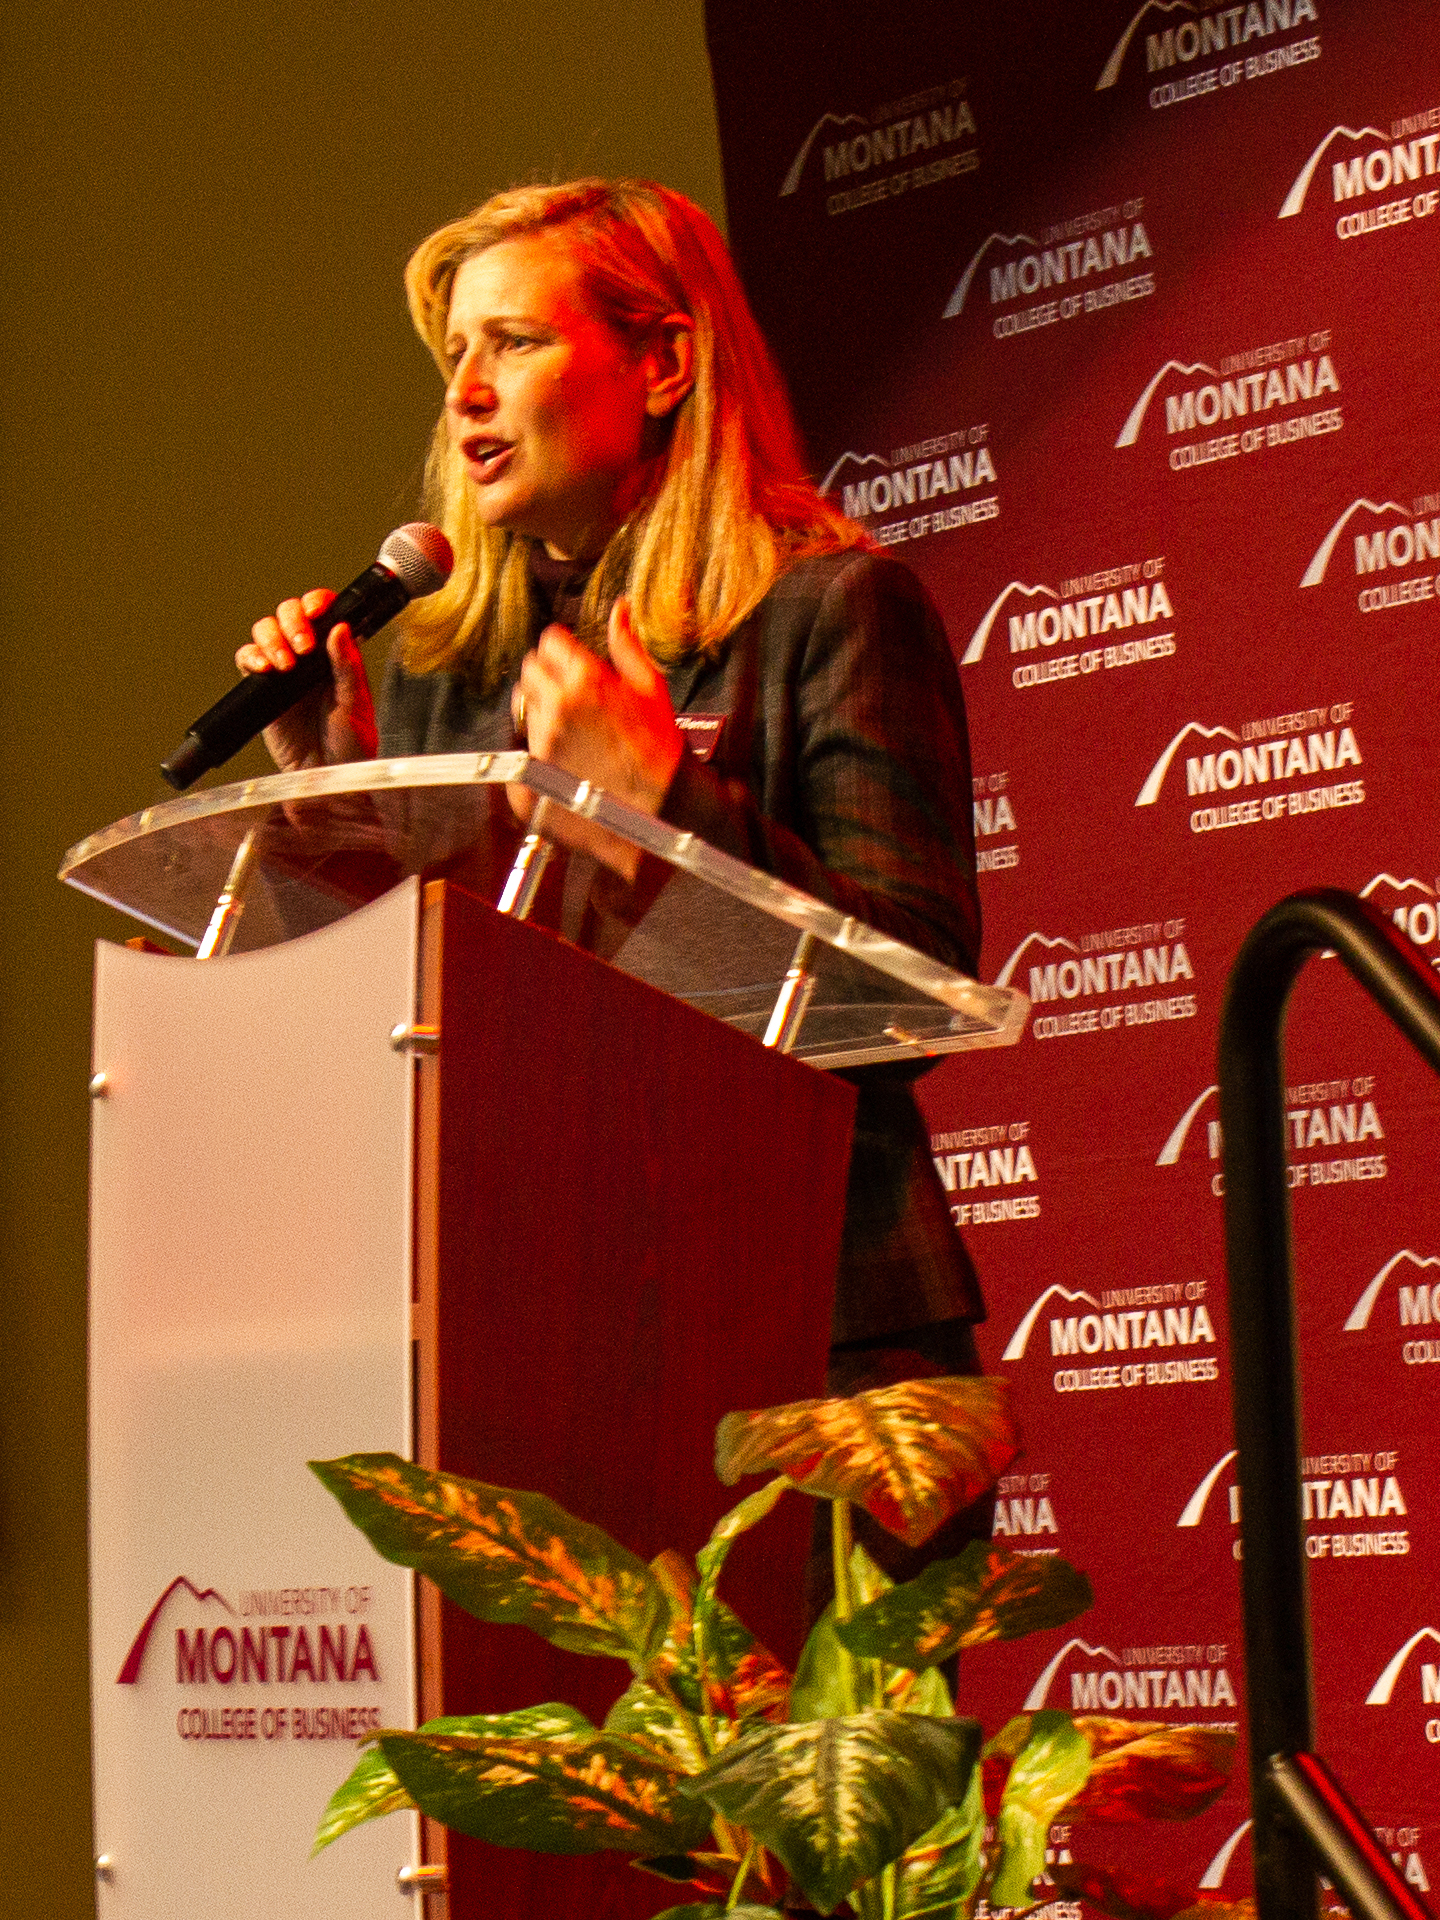 Dean Suzanne Tilleman speaking at a podium